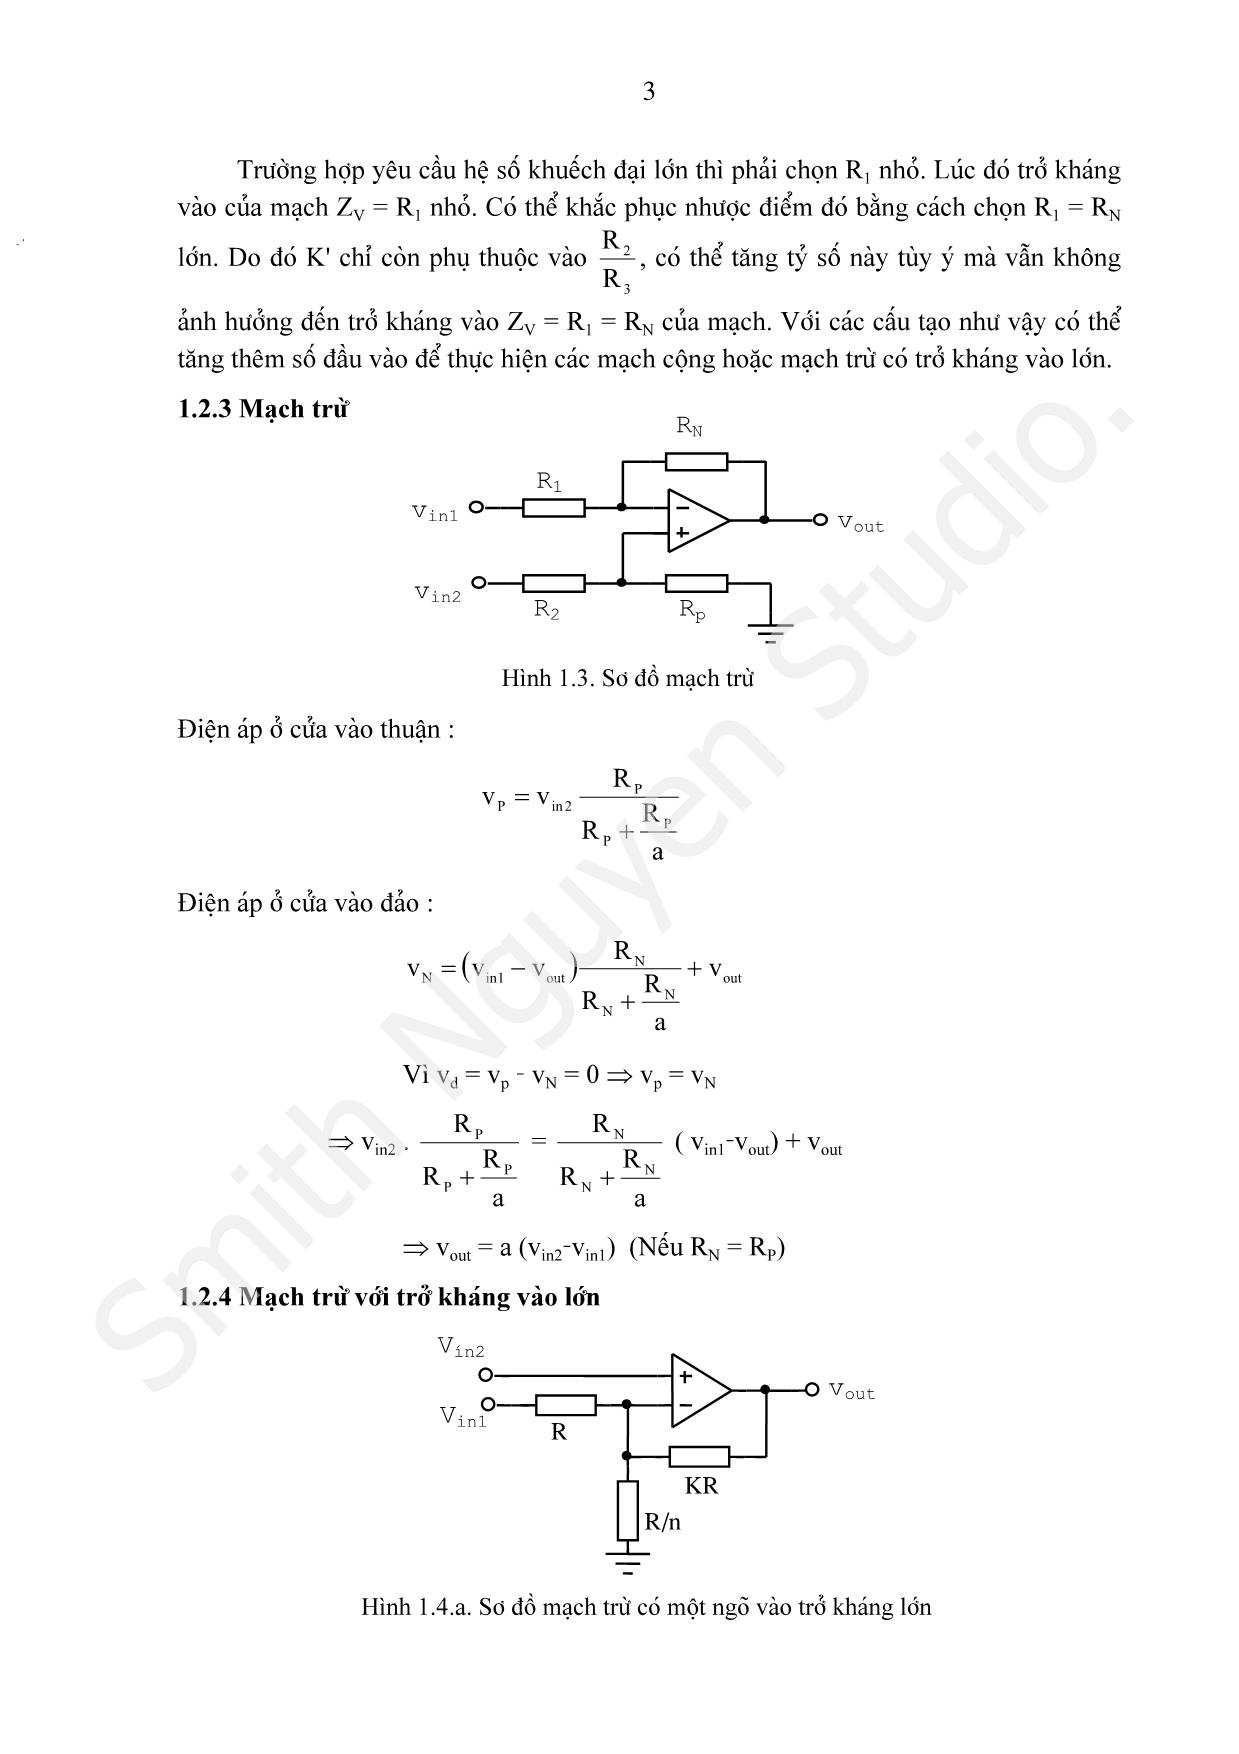 Bài giảng Các mạch tính toán, điều khiển và tạo hàm dùng khuếch đại thuật toán trang 3